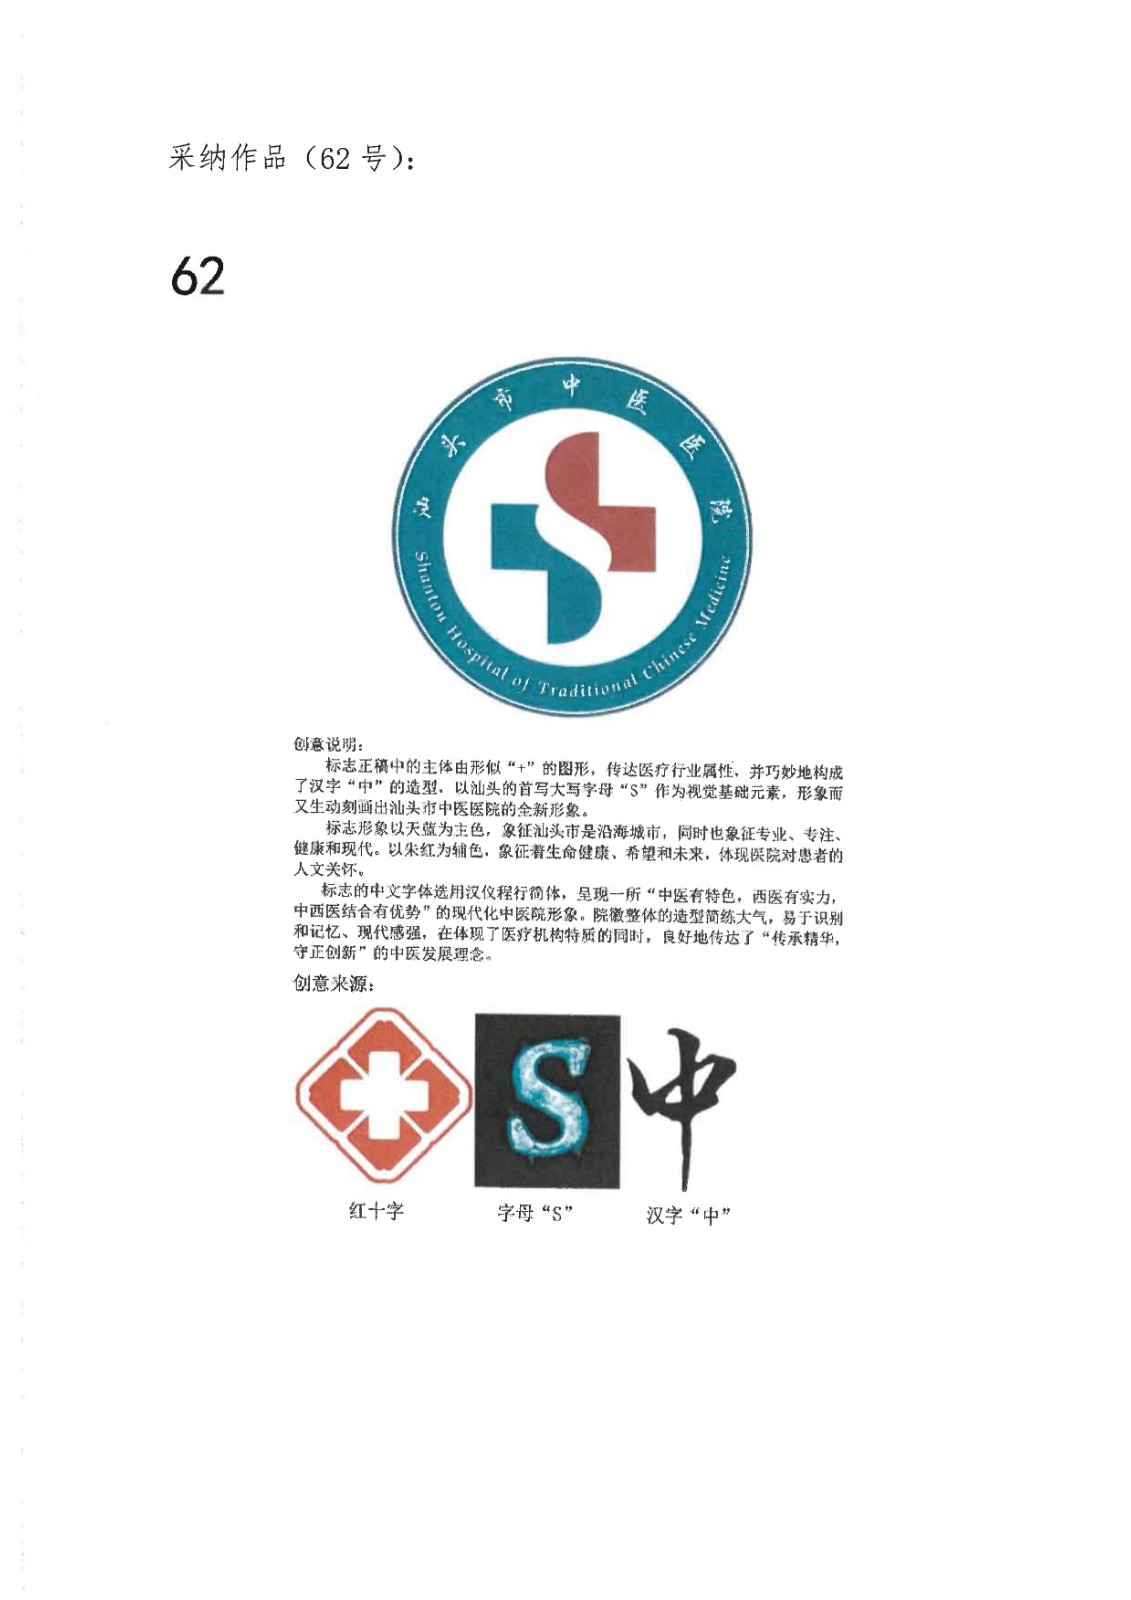 汕头中医院院徽logo征集活动采纳及入围作品的公示